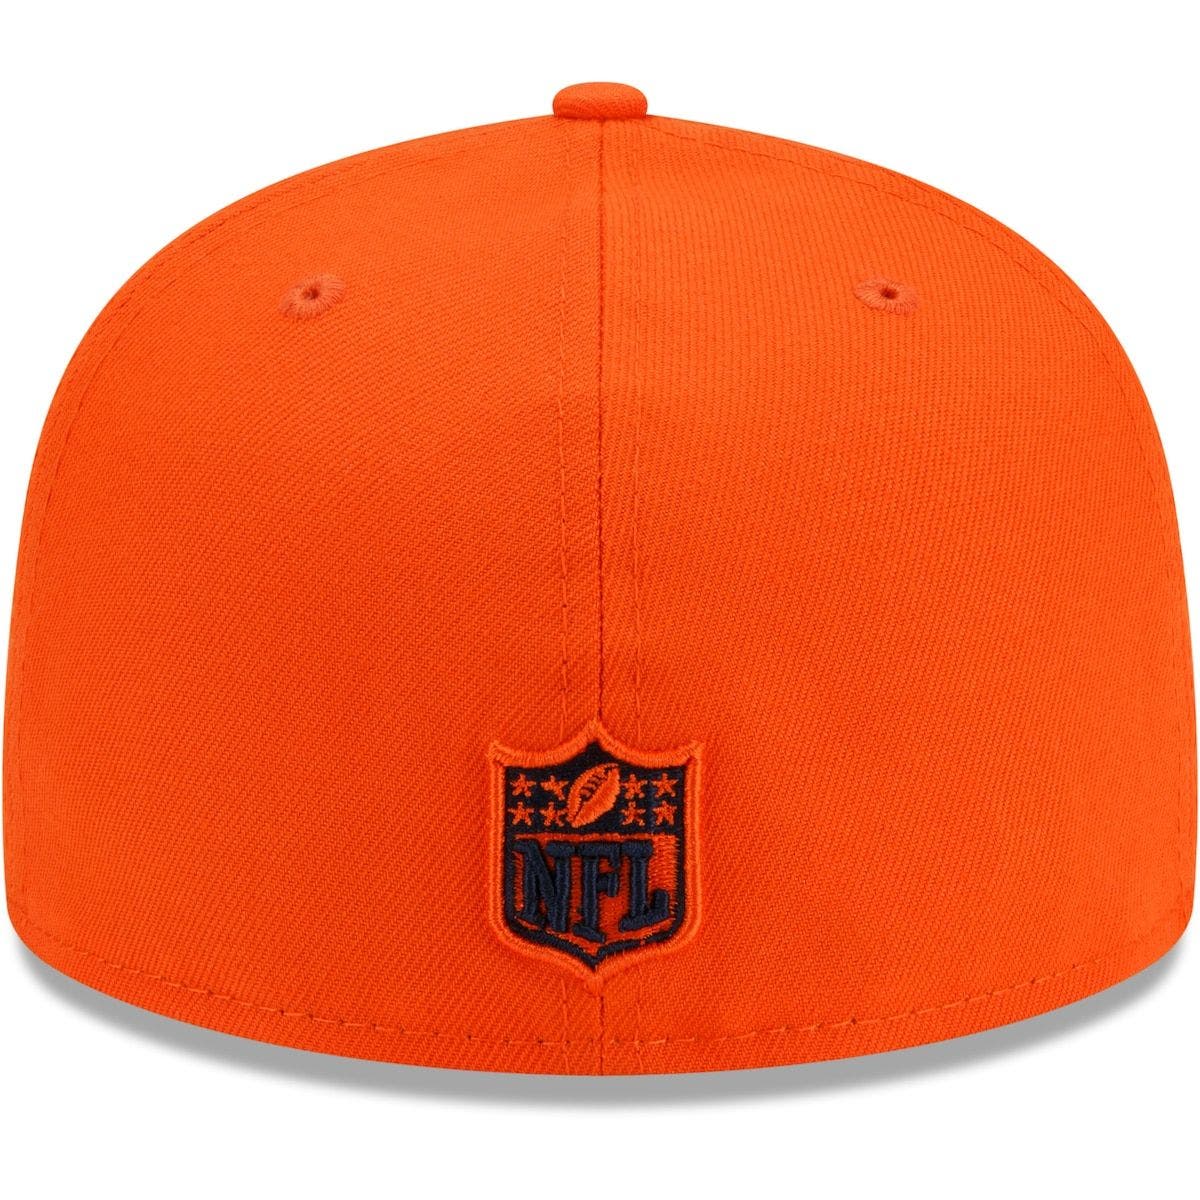 Denver Broncos Hat Fitted Men's 59FIFTY Official Sideline Orange New Era 